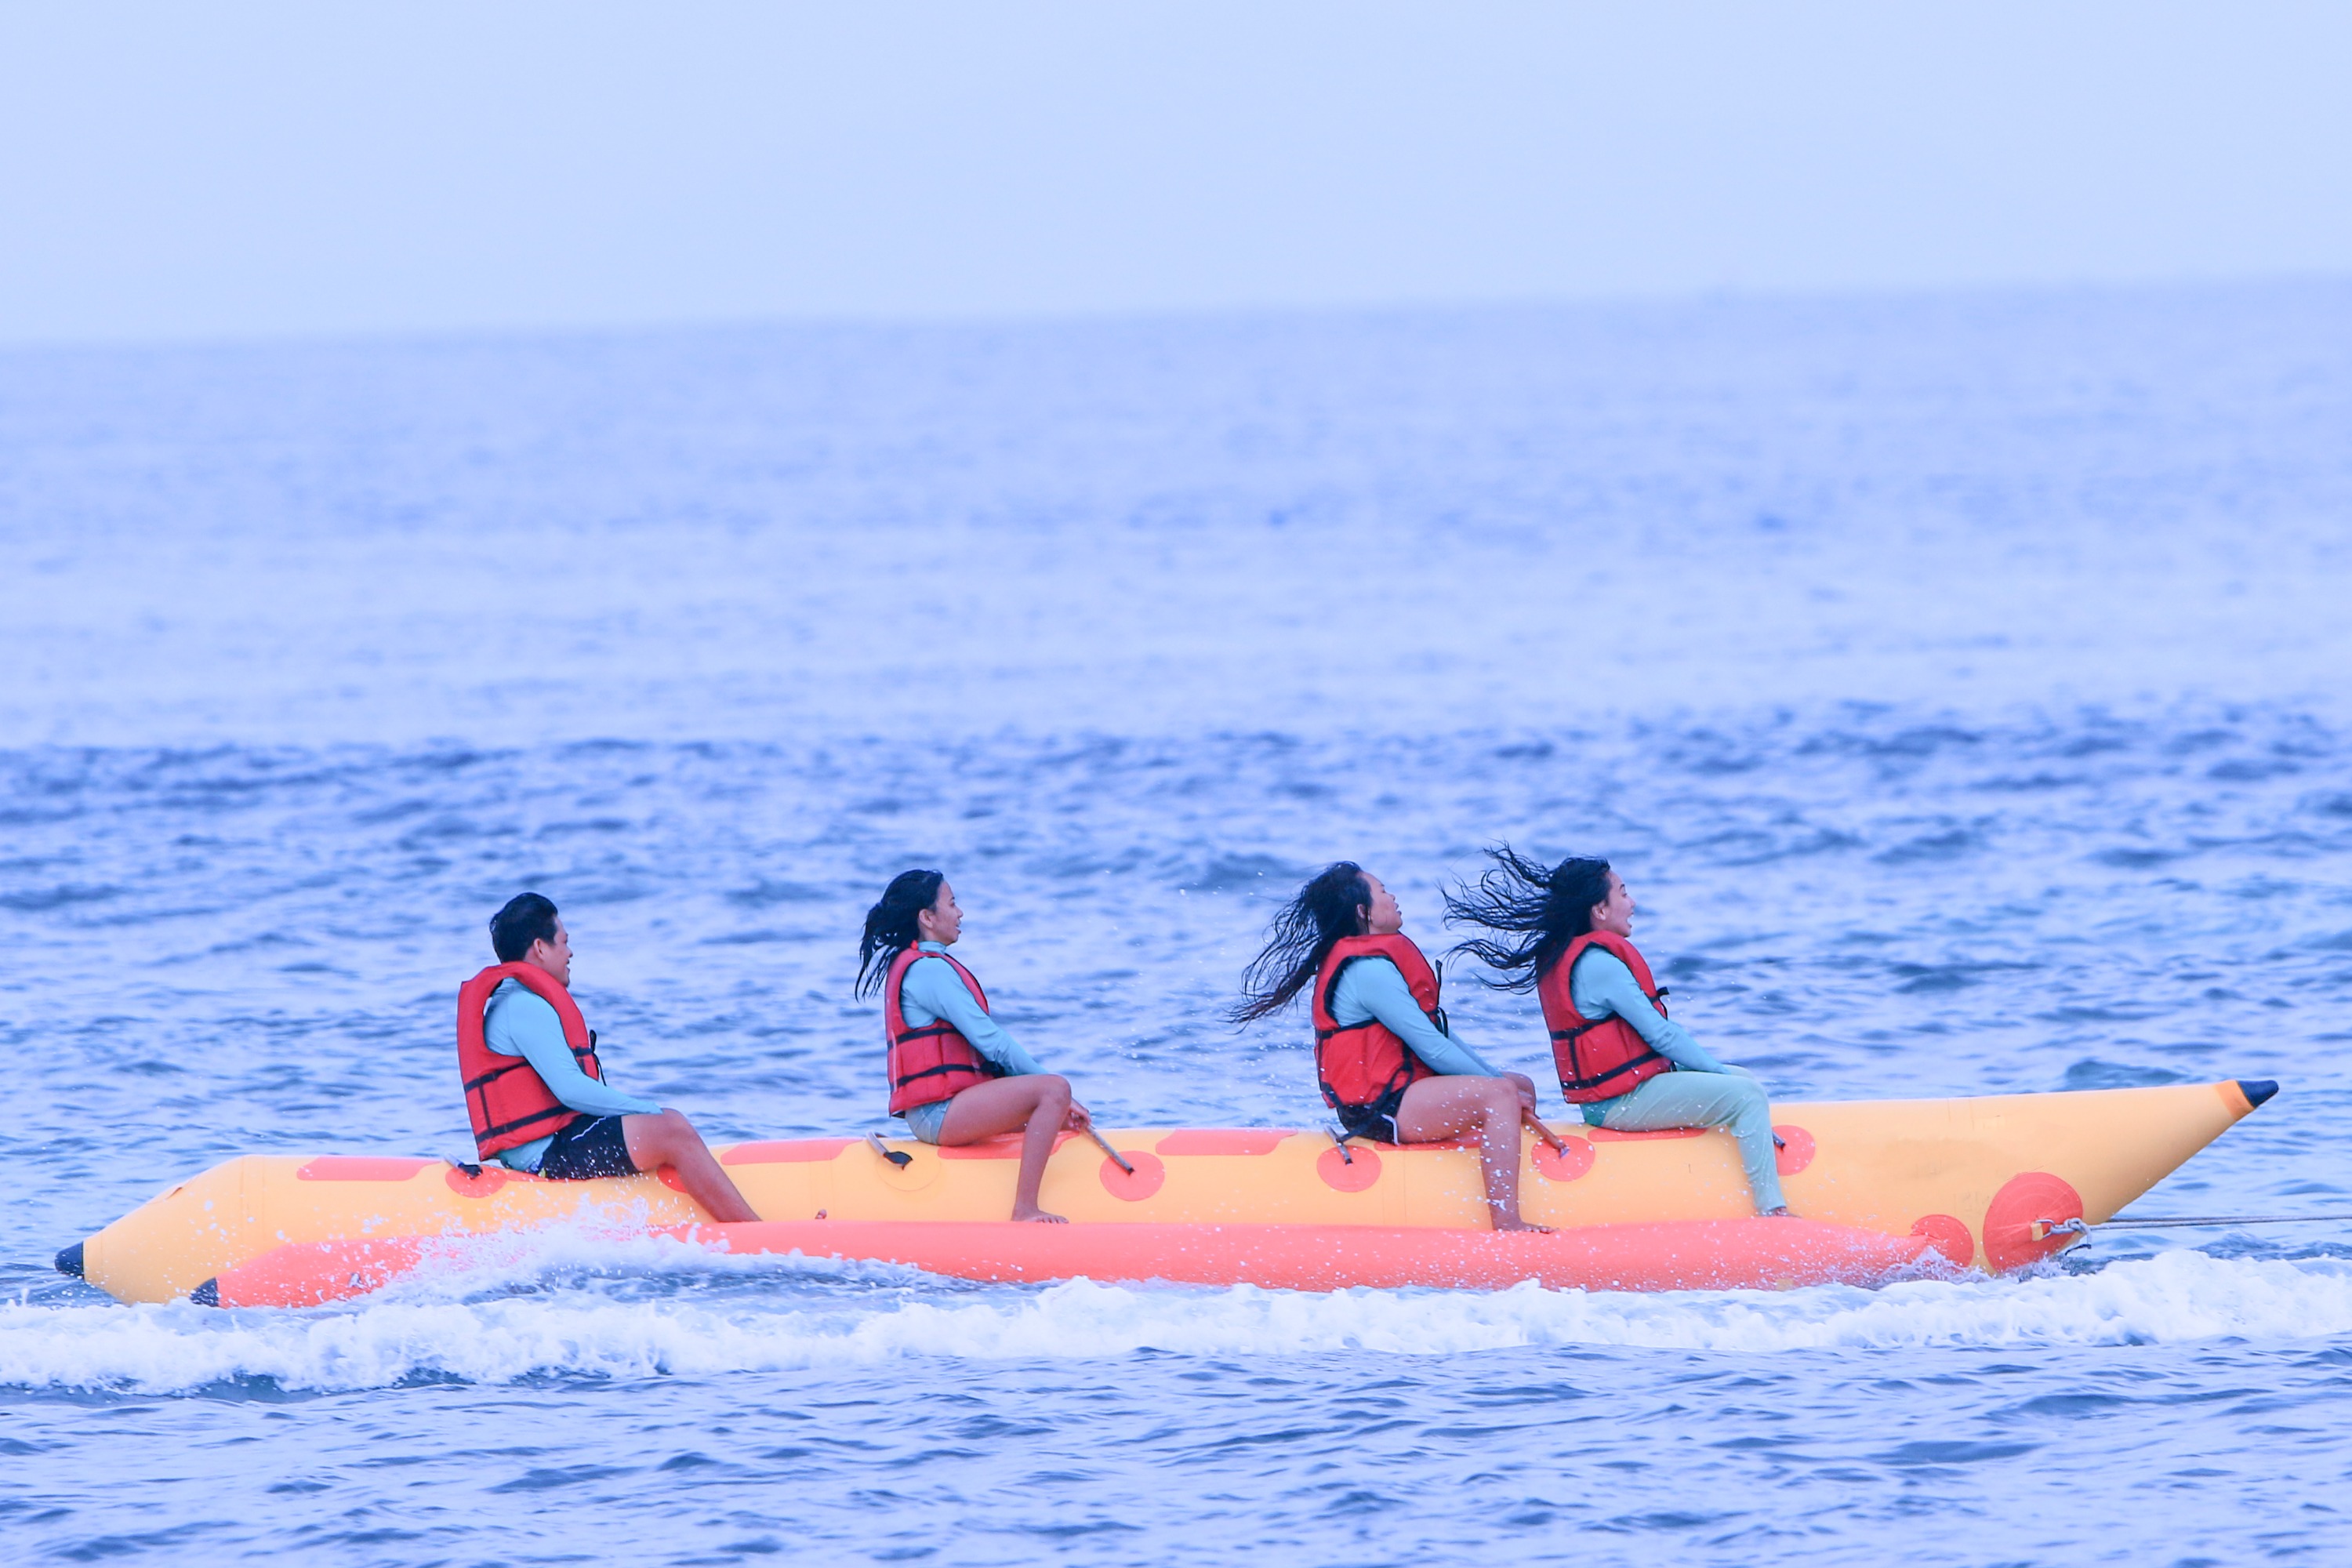 峇里島香蕉船水上活動組合